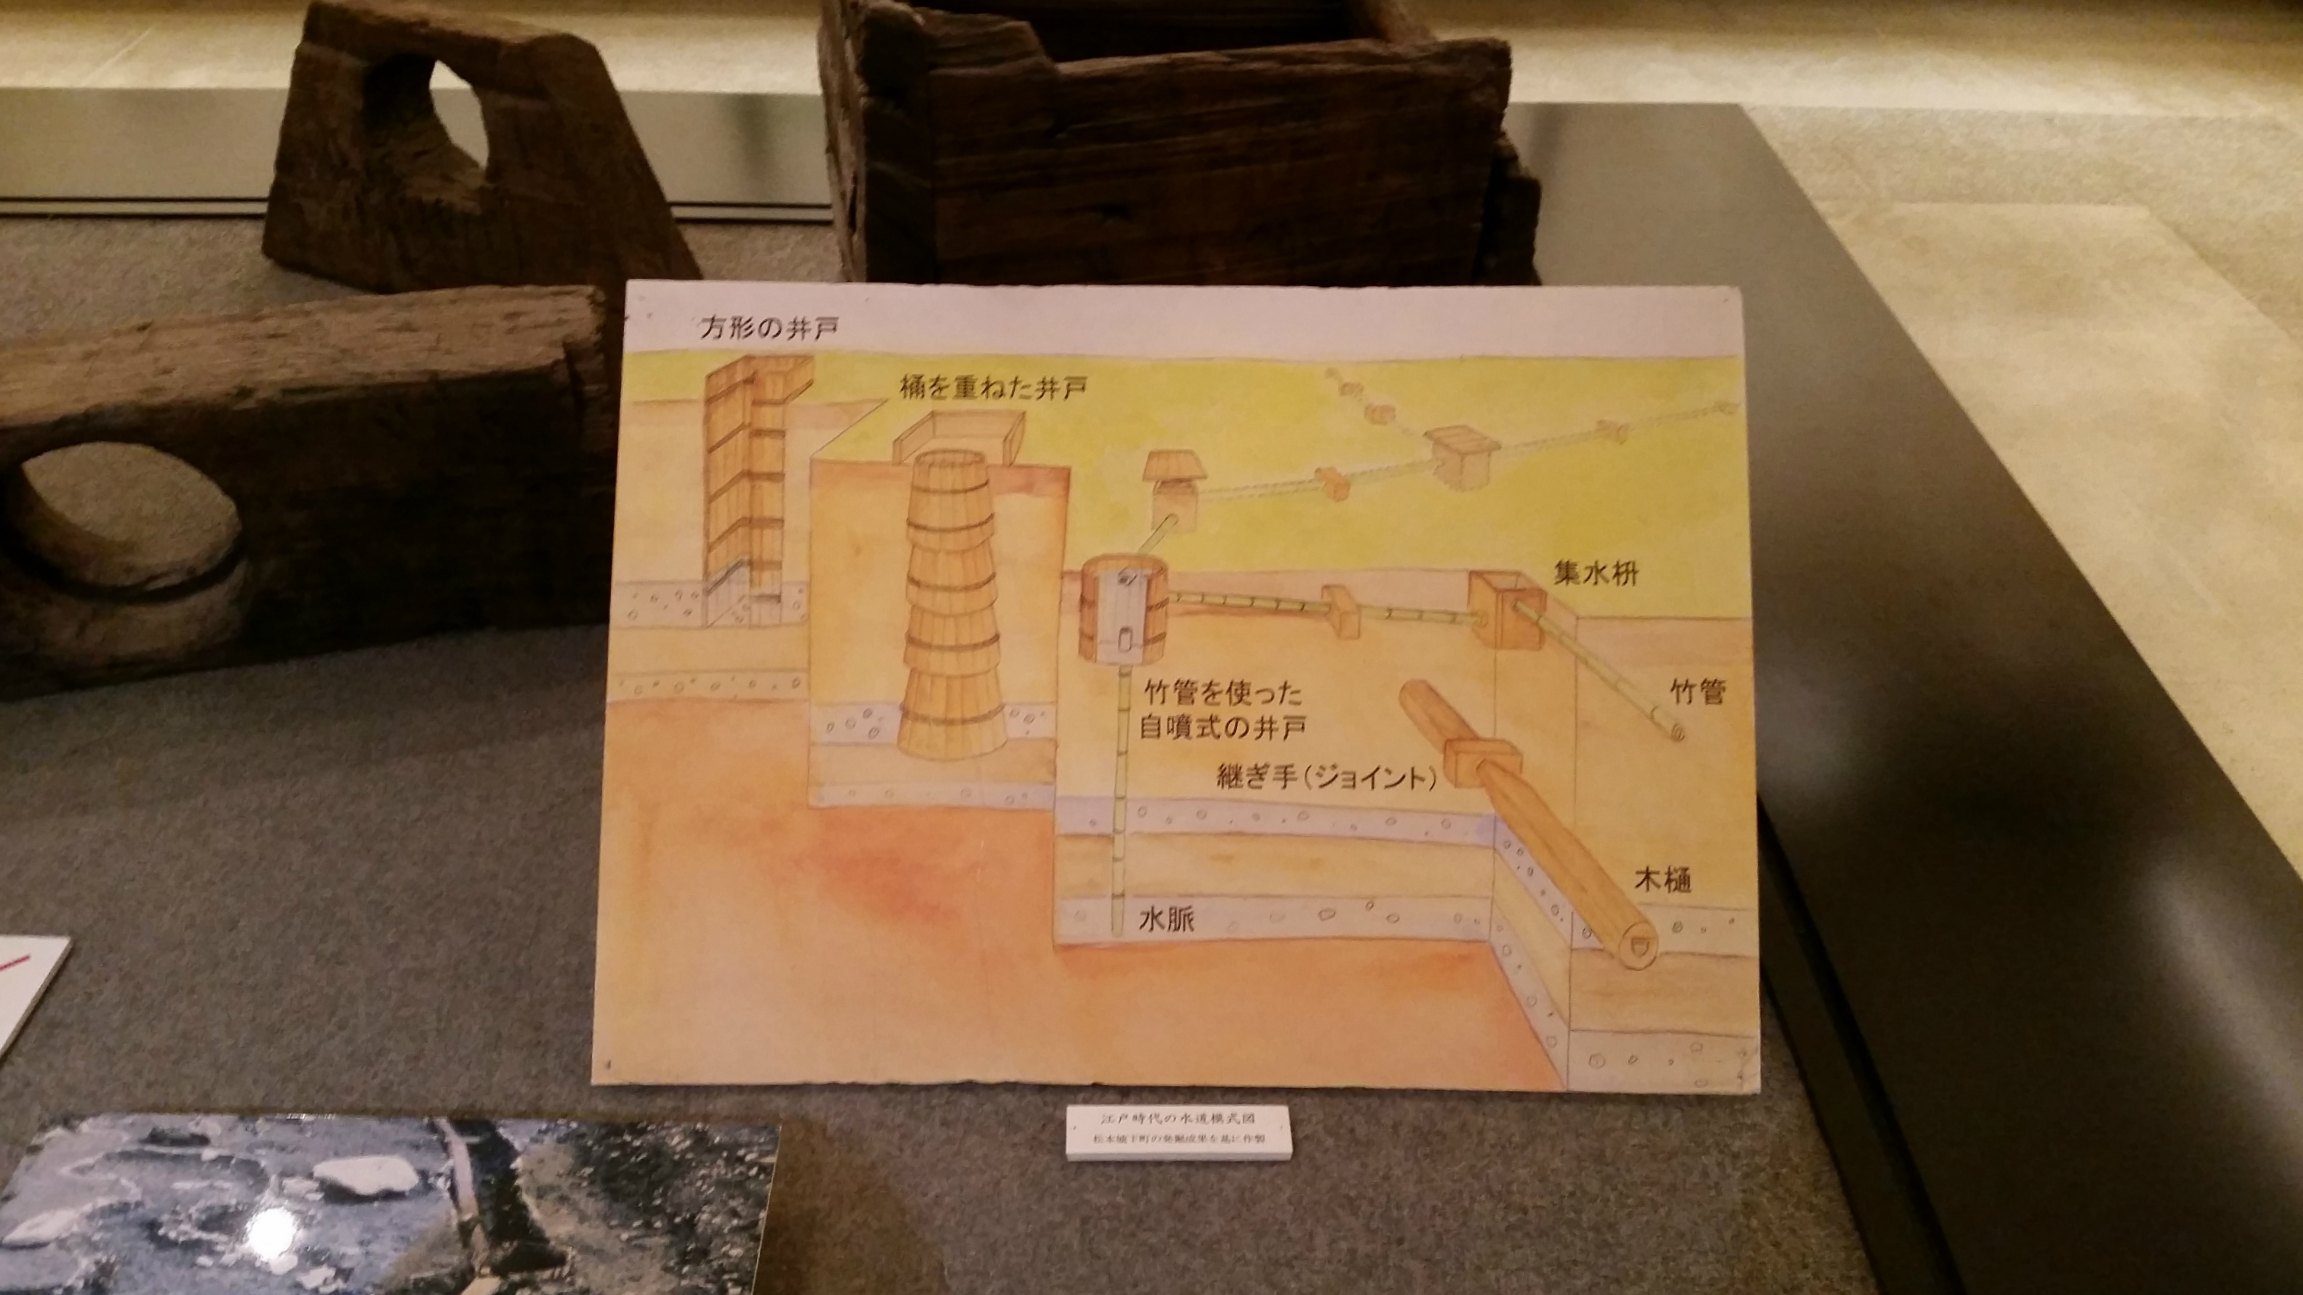 Displays inside Matsumoto City Museum, Japan